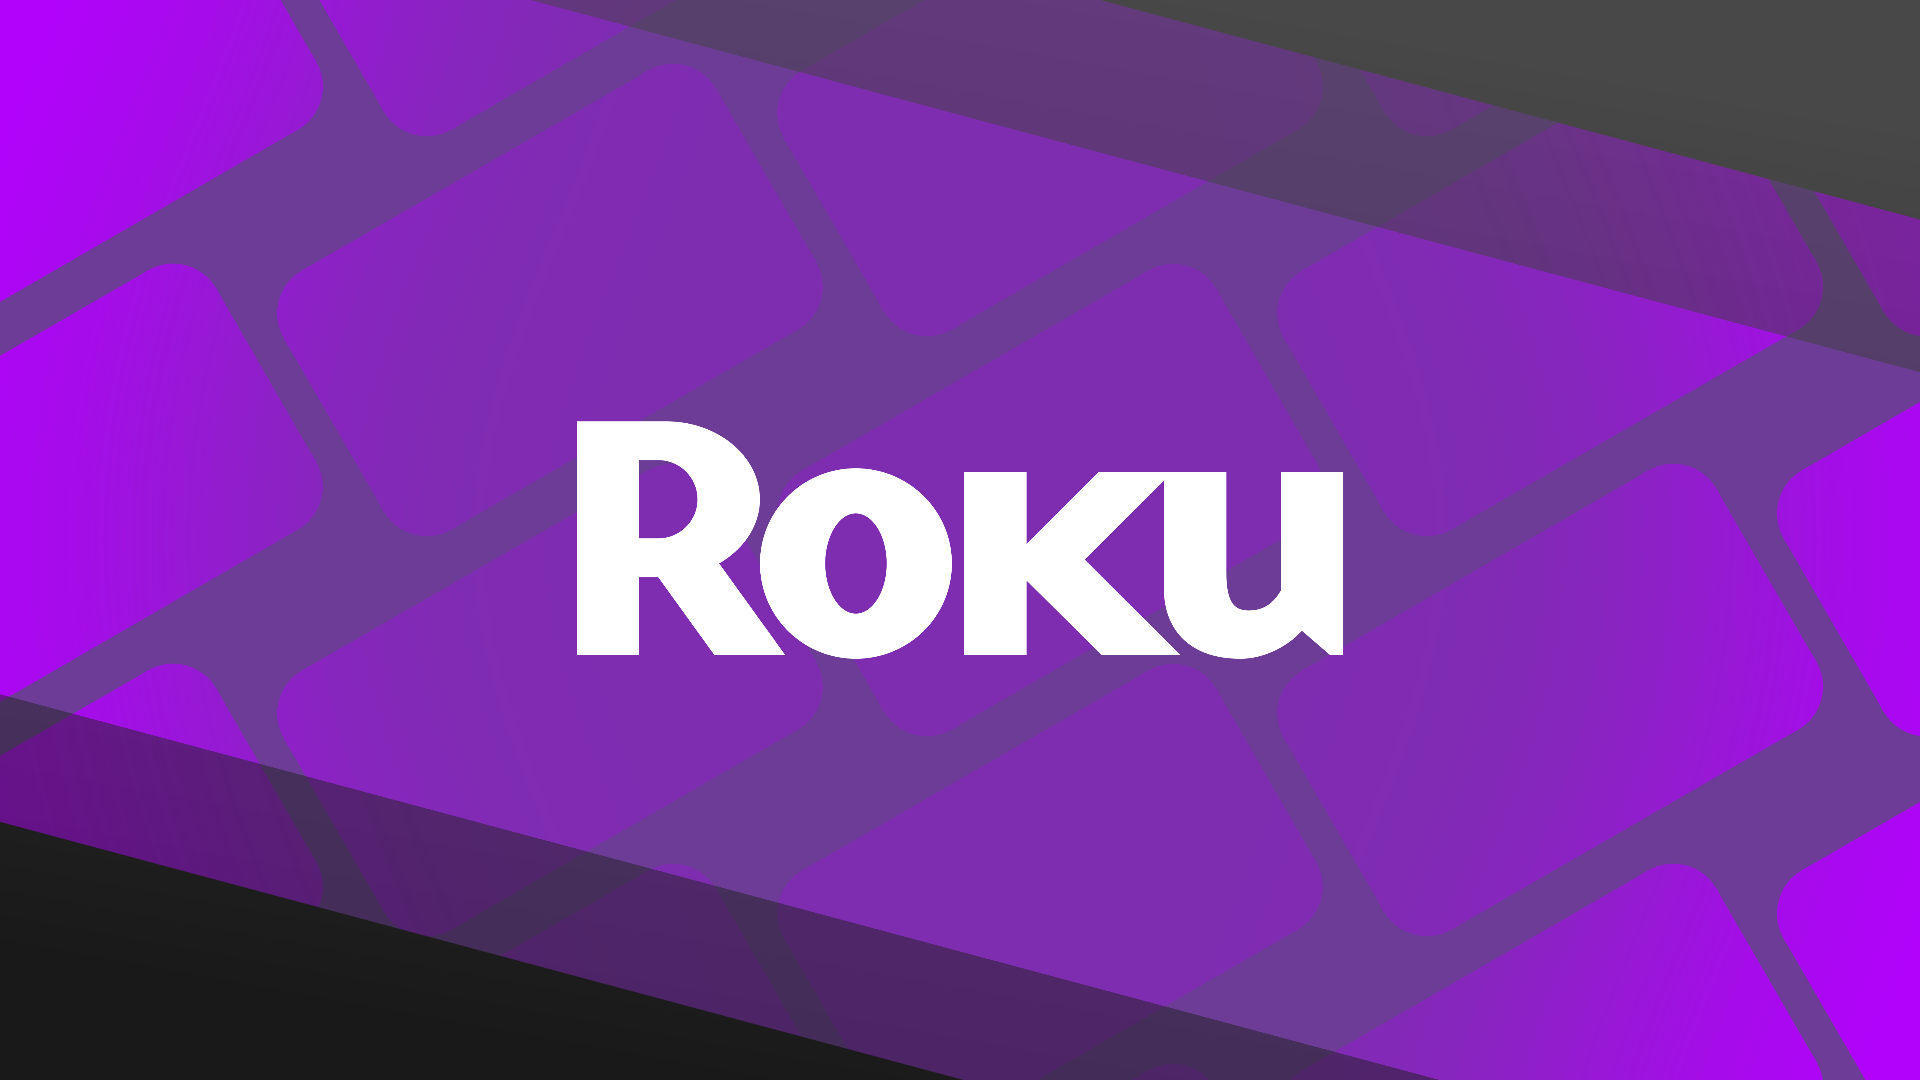 O logotipo da Roku contra um rolo de filme roxo